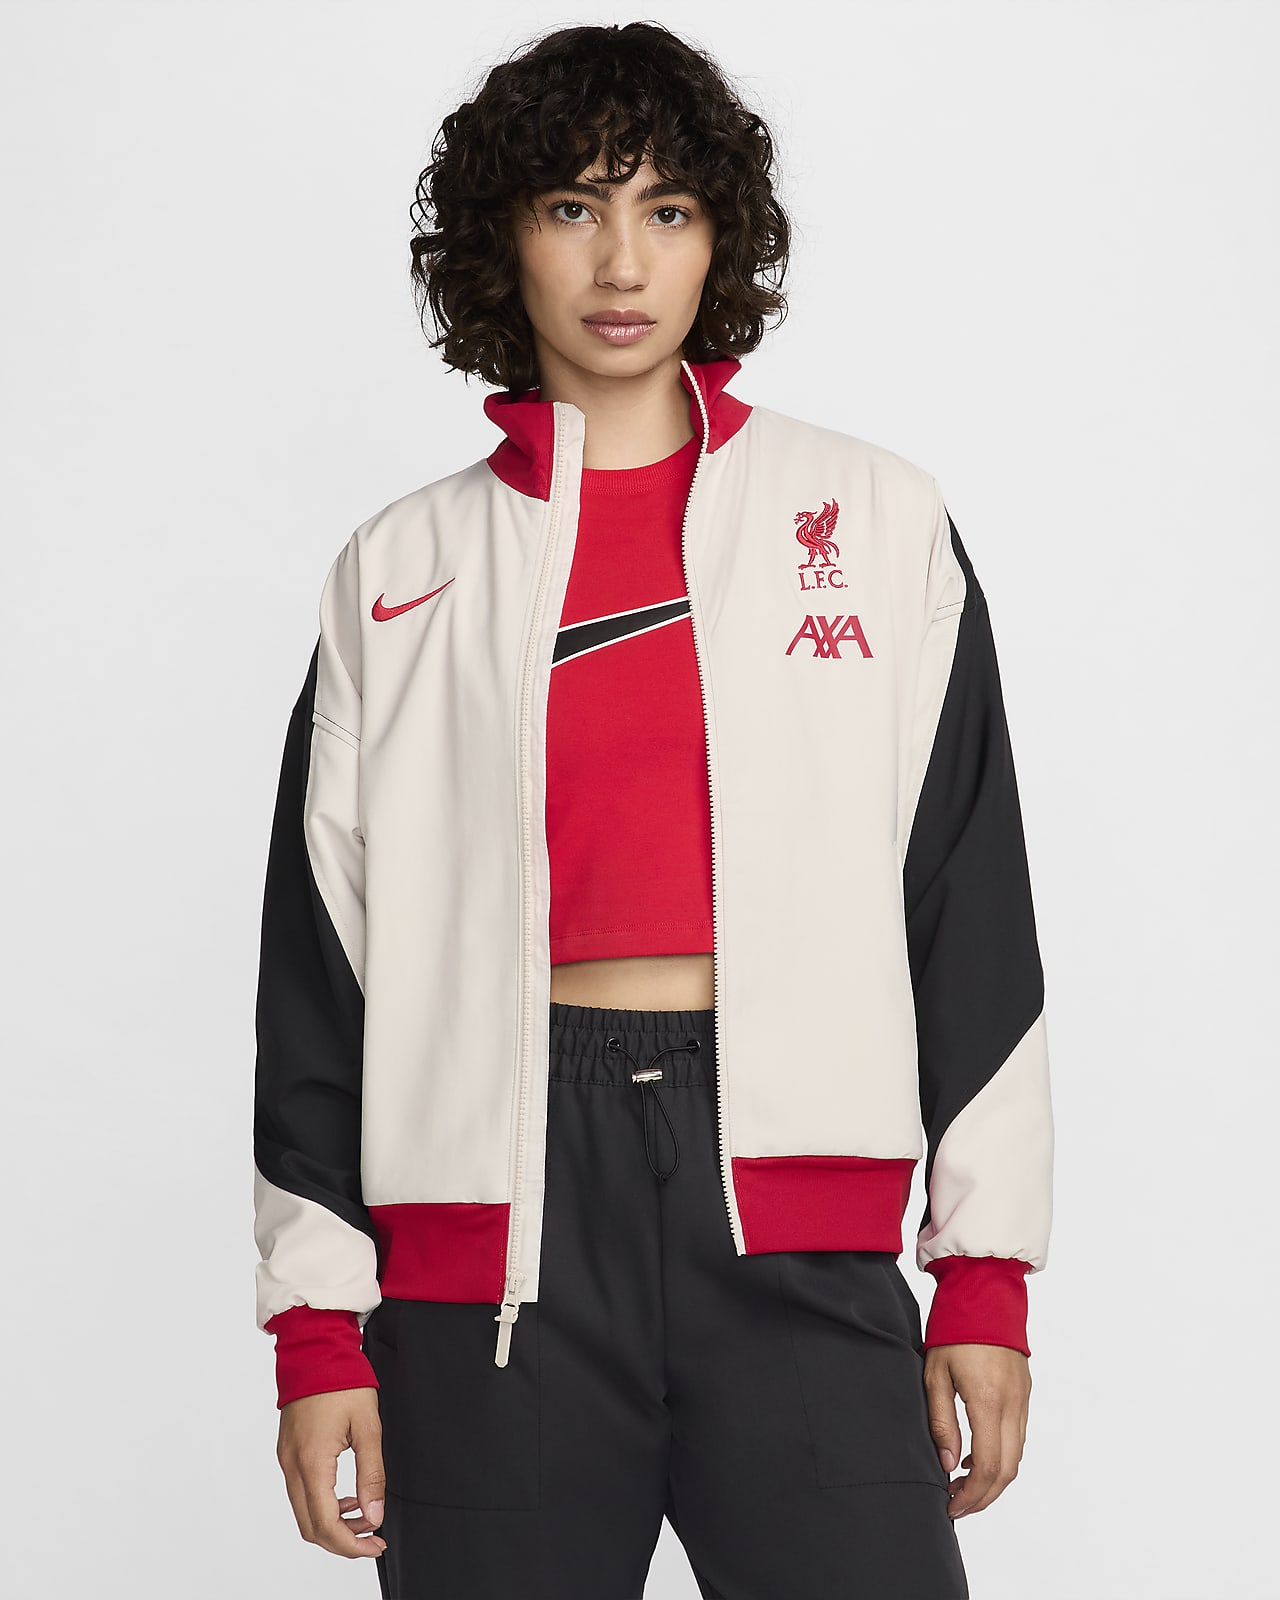 Liverpool F.C. Strike Women's Nike Dri-FIT Football Jacket